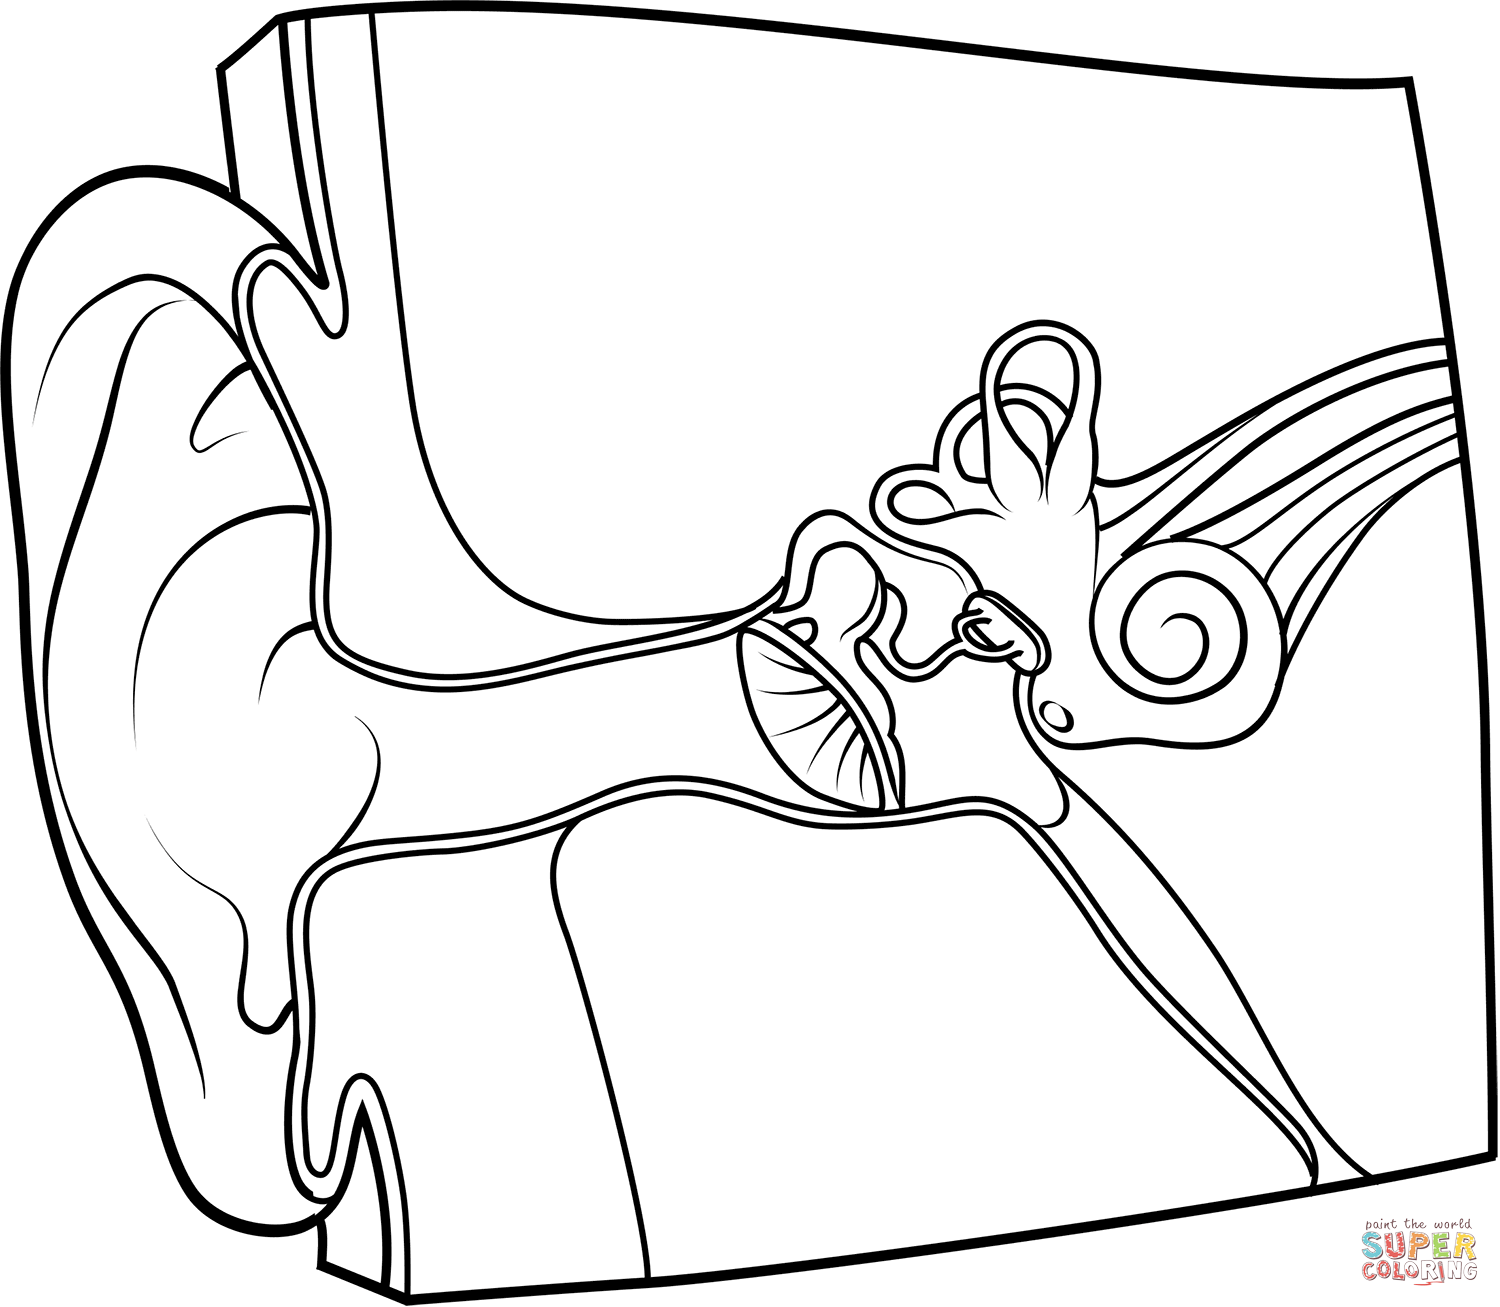 Dibujo de anatomãa del oãdo para colorear dibujos para colorear imprimir gratis